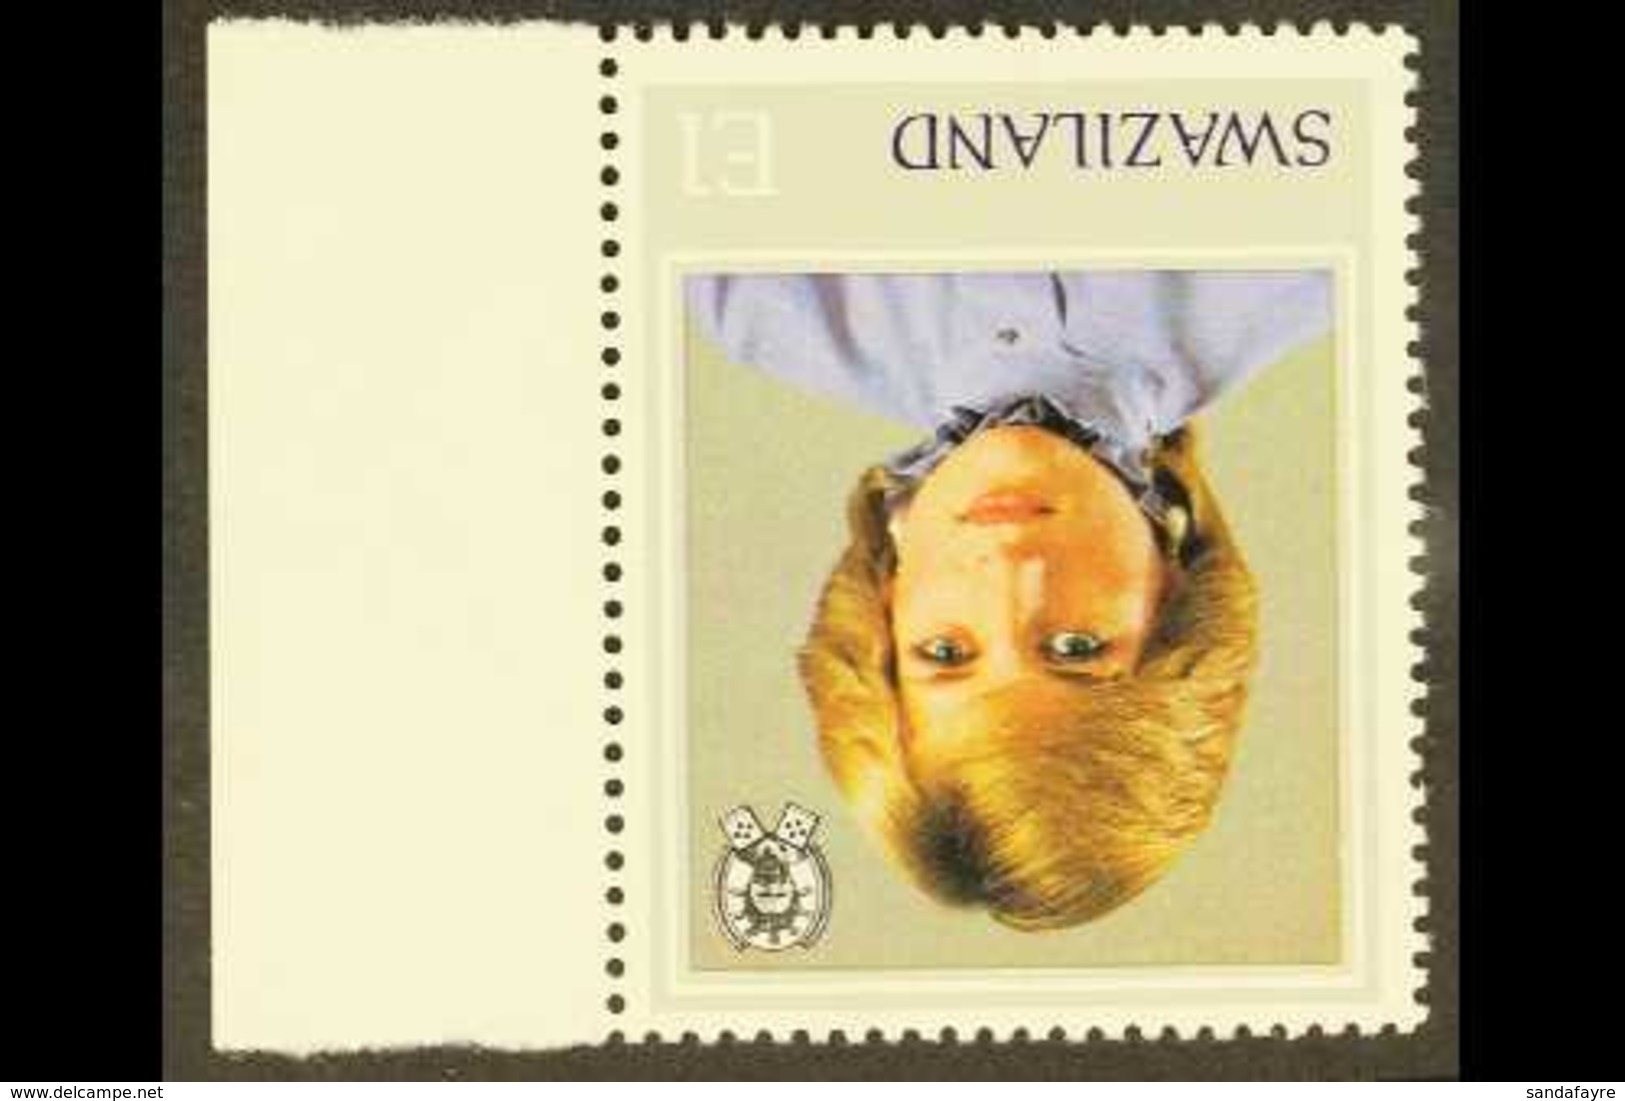 SWAZILAND - Swaziland (...-1967)